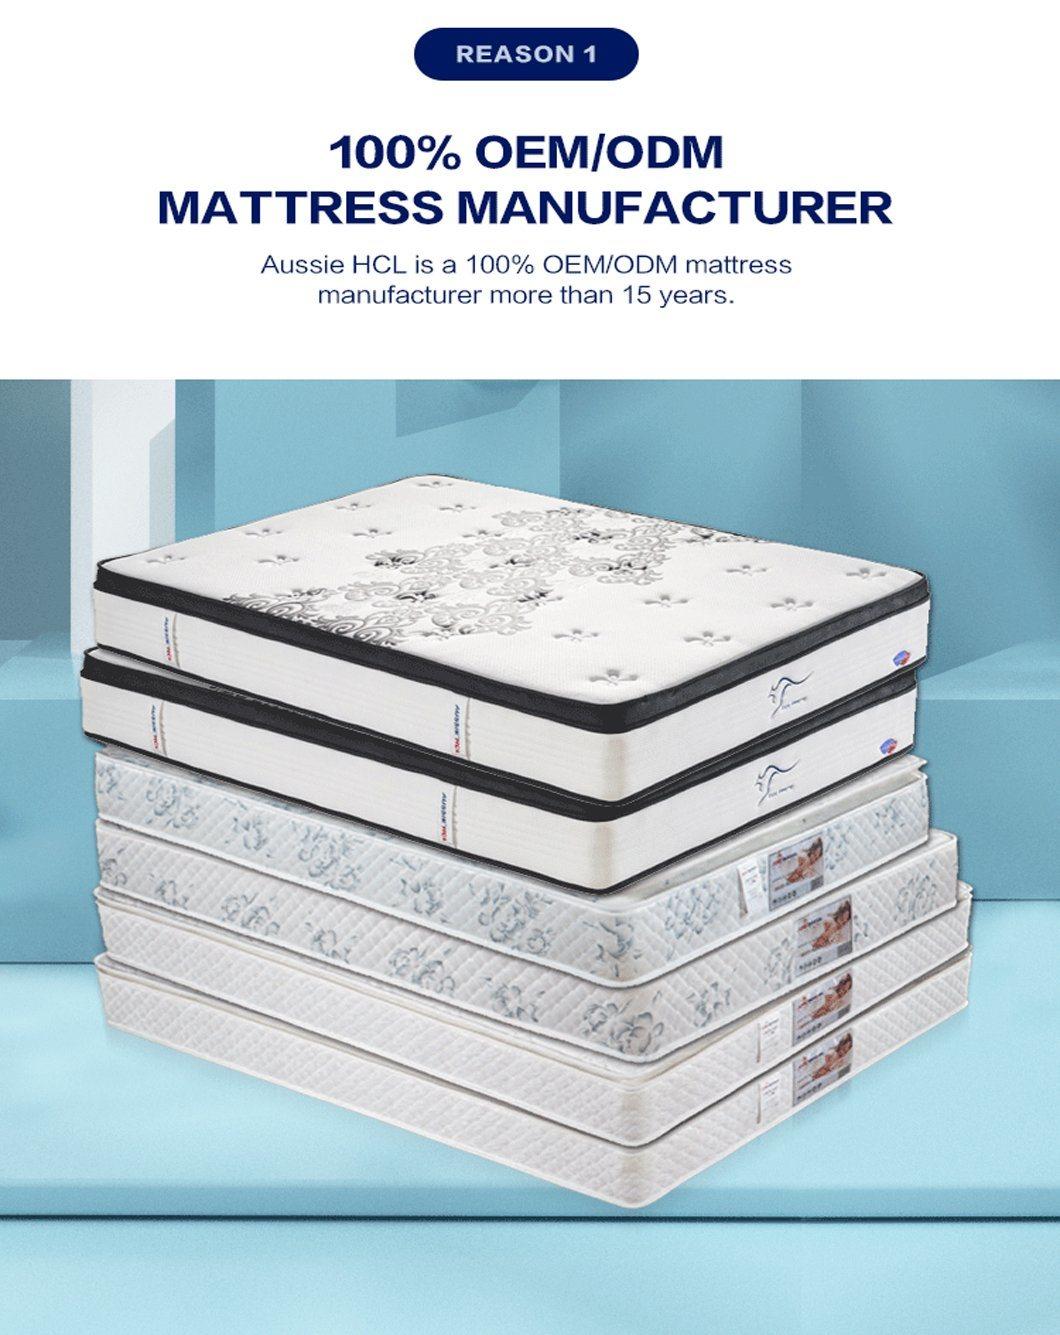 Best Factory Aussie Modern Bed Mattresses for Home Furniture Medium Firm Queen King Twin Single Size Latex Gel Memory Foam Mattress